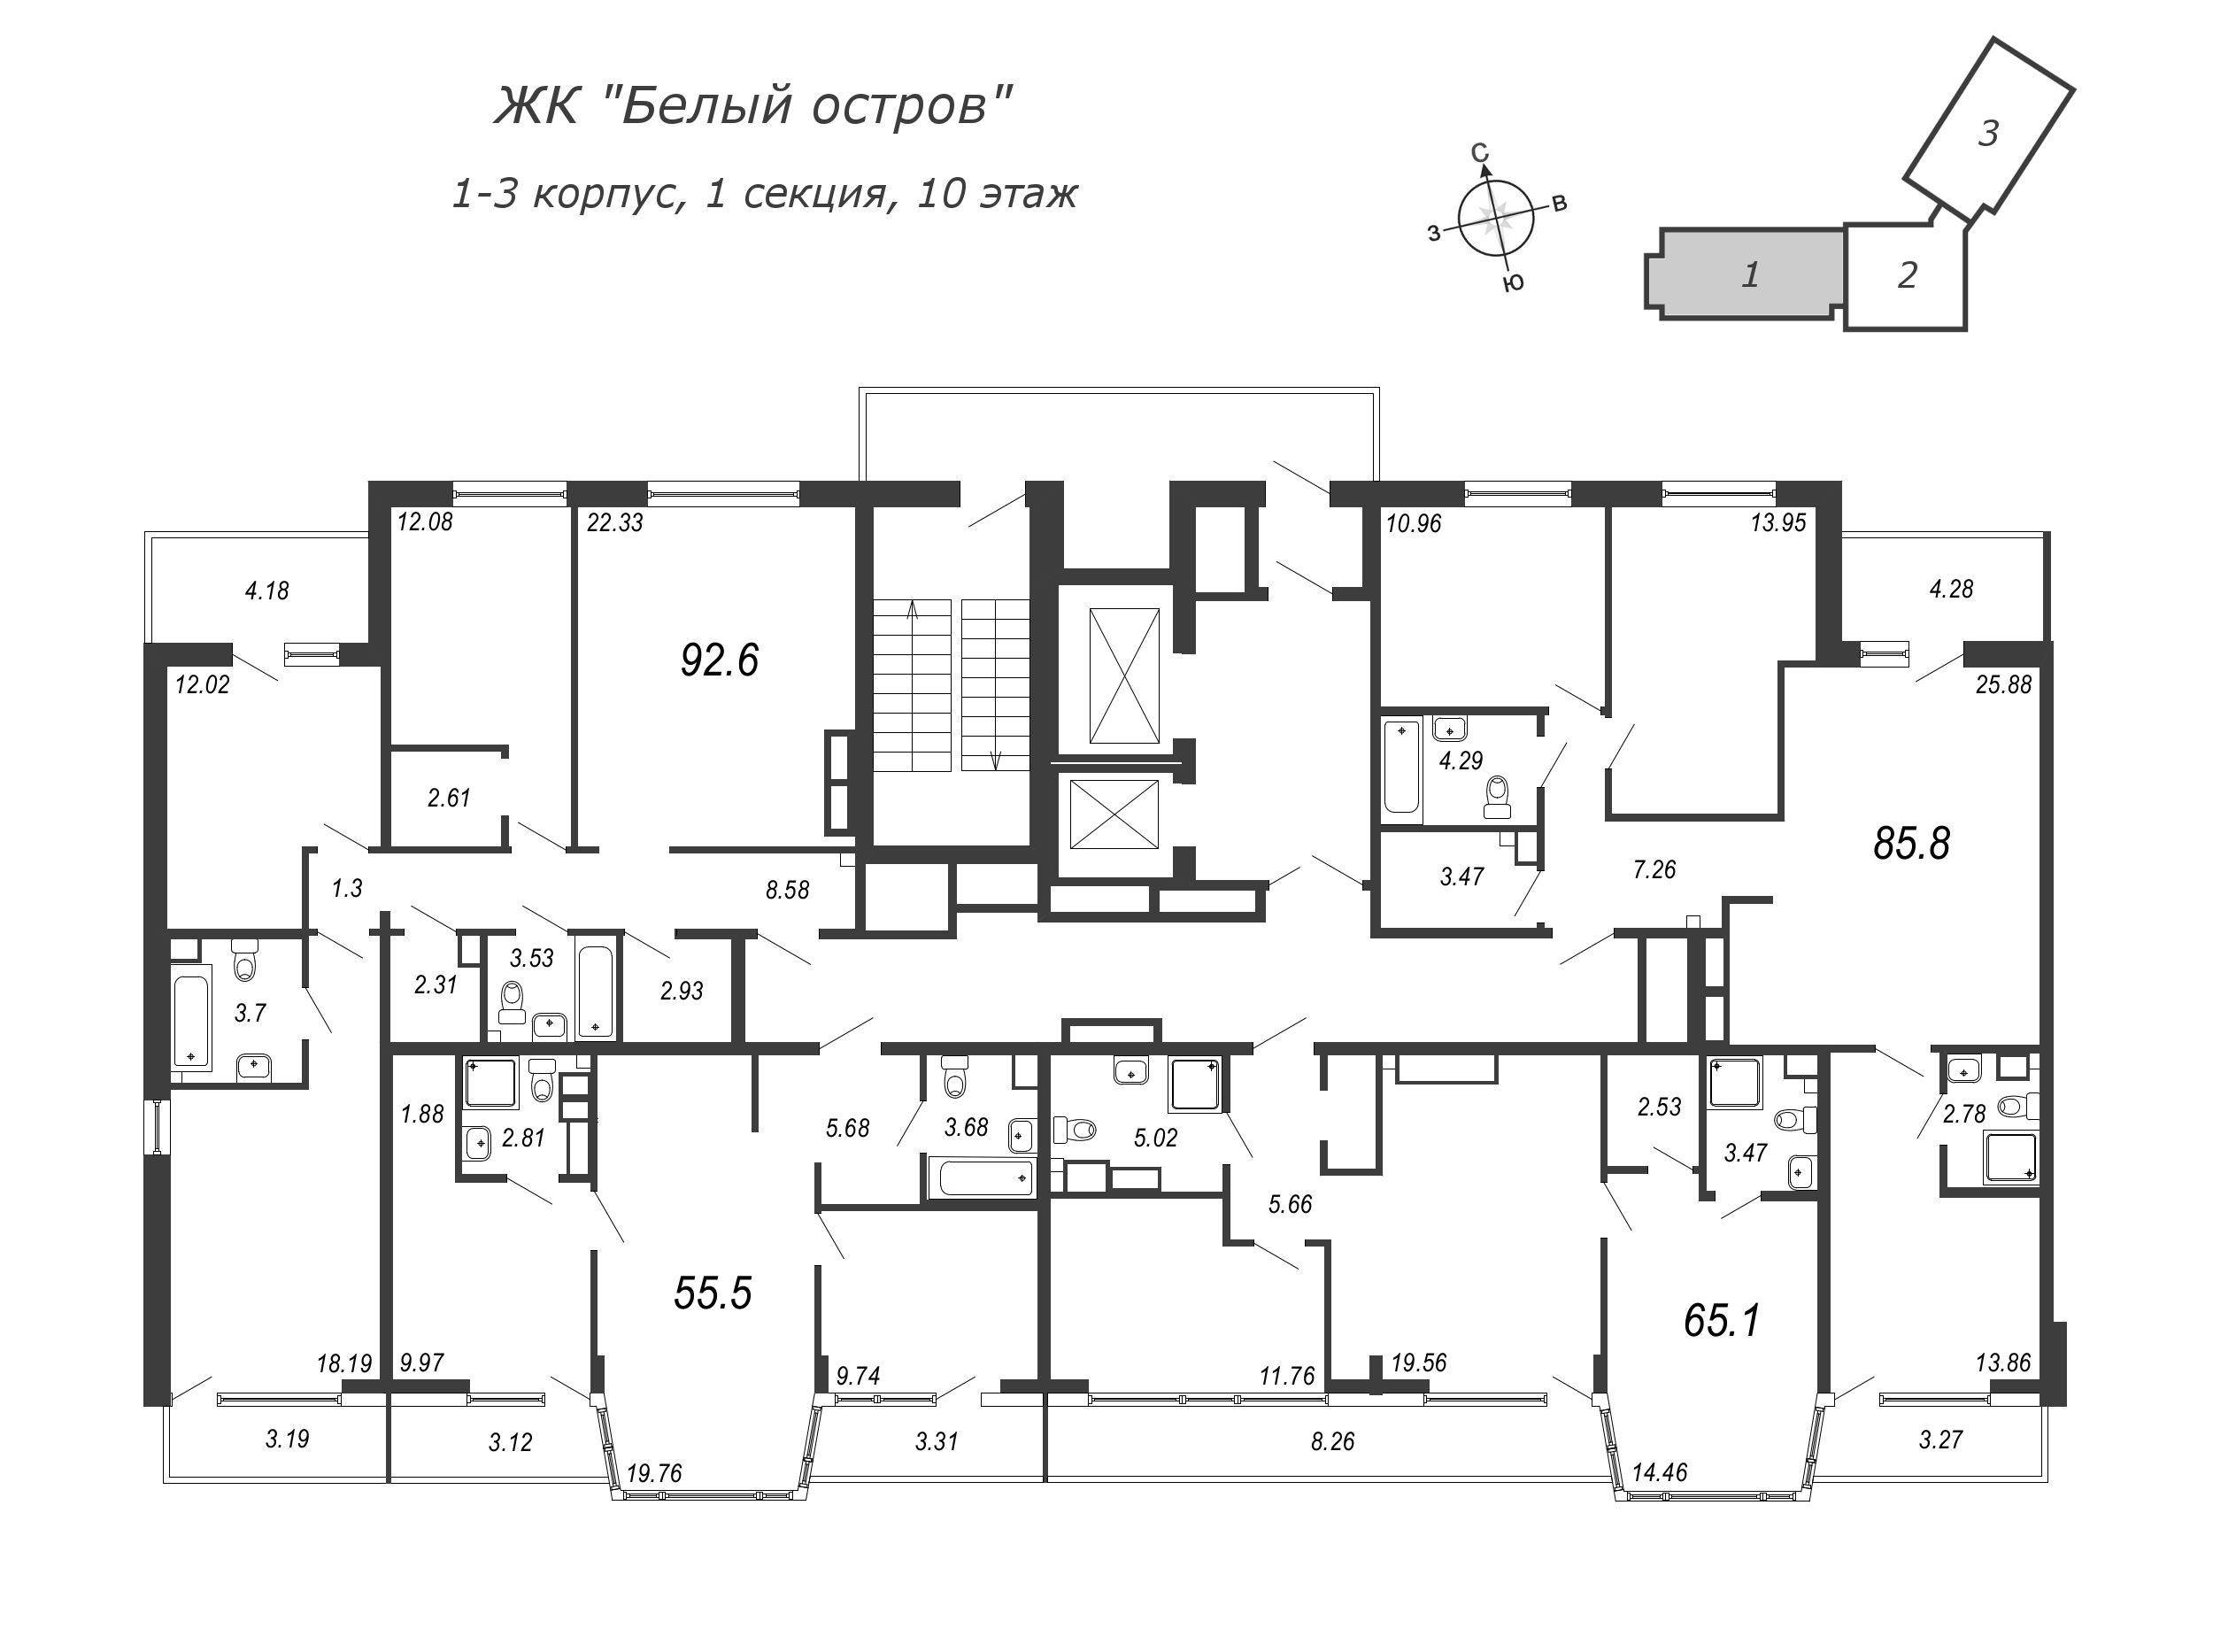 3-комнатная (Евро) квартира, 64.8 м² в ЖК "Белый остров" - планировка этажа